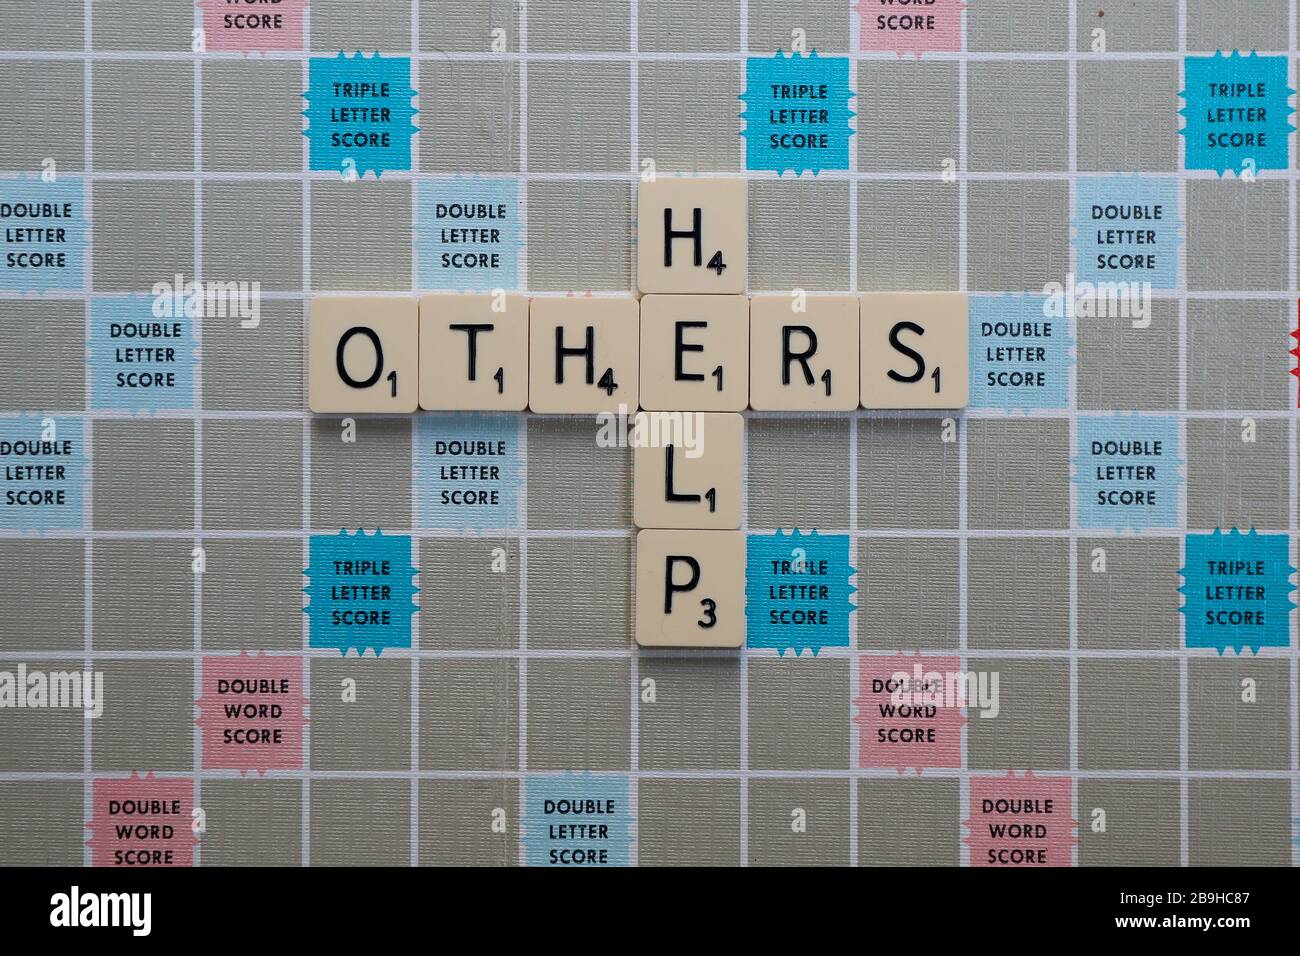 Londres, Royaume-Uni. 24 mars 2020. Scrabble Board avec des phrases et des mots liés à l'aide, la positivité et le soutien de Coronavirus. AIDEZ LES AUTRES Banque D'Images